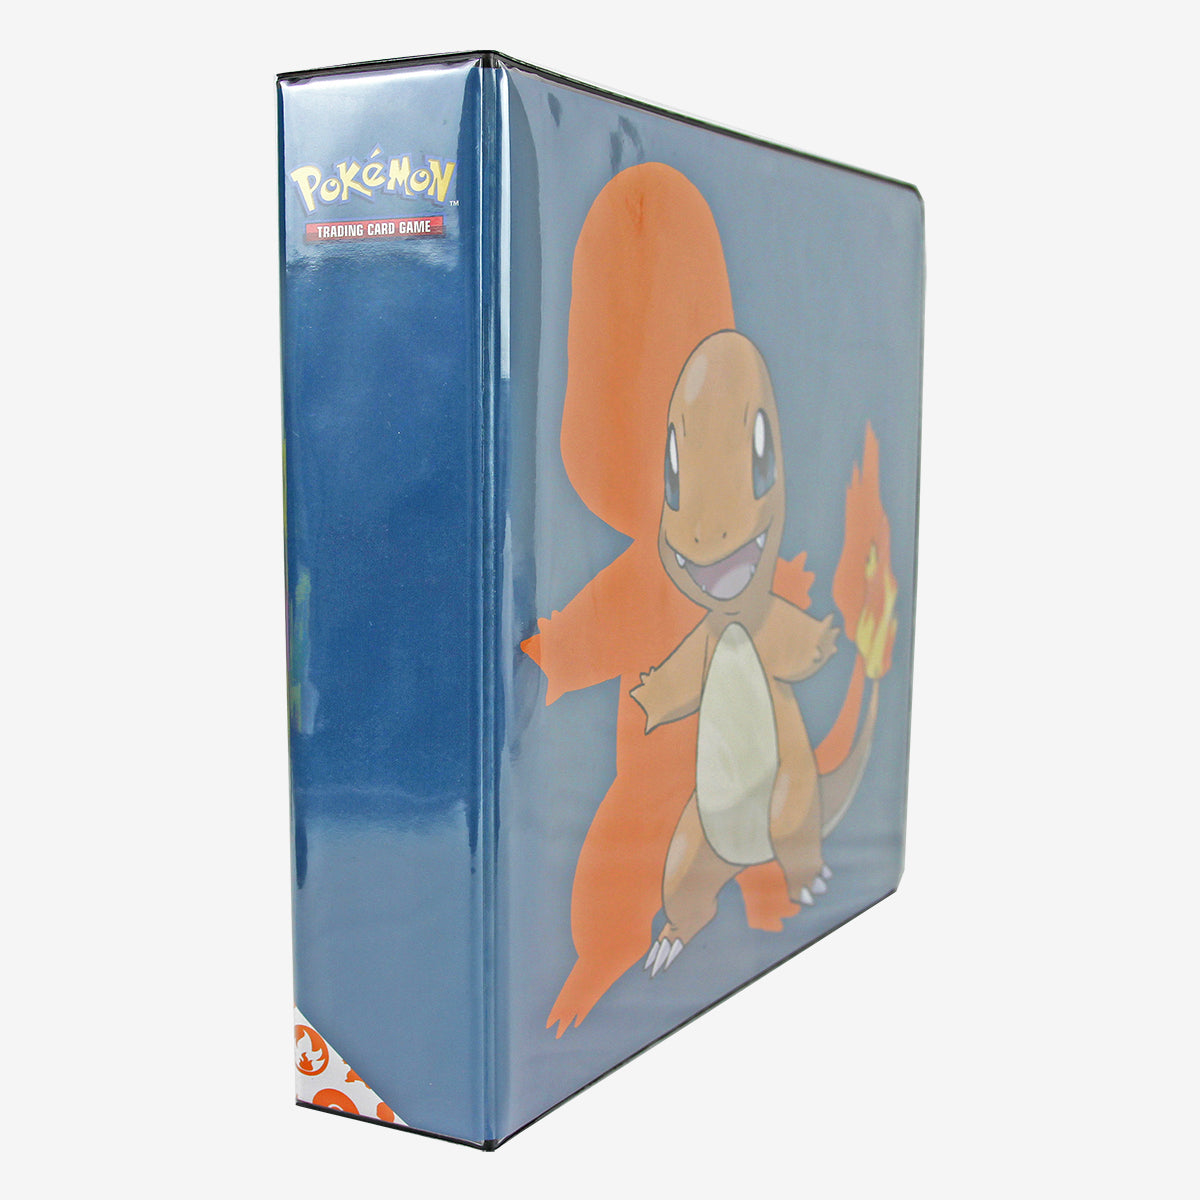  Charmander 2 Album for Pokemon : Toys & Games